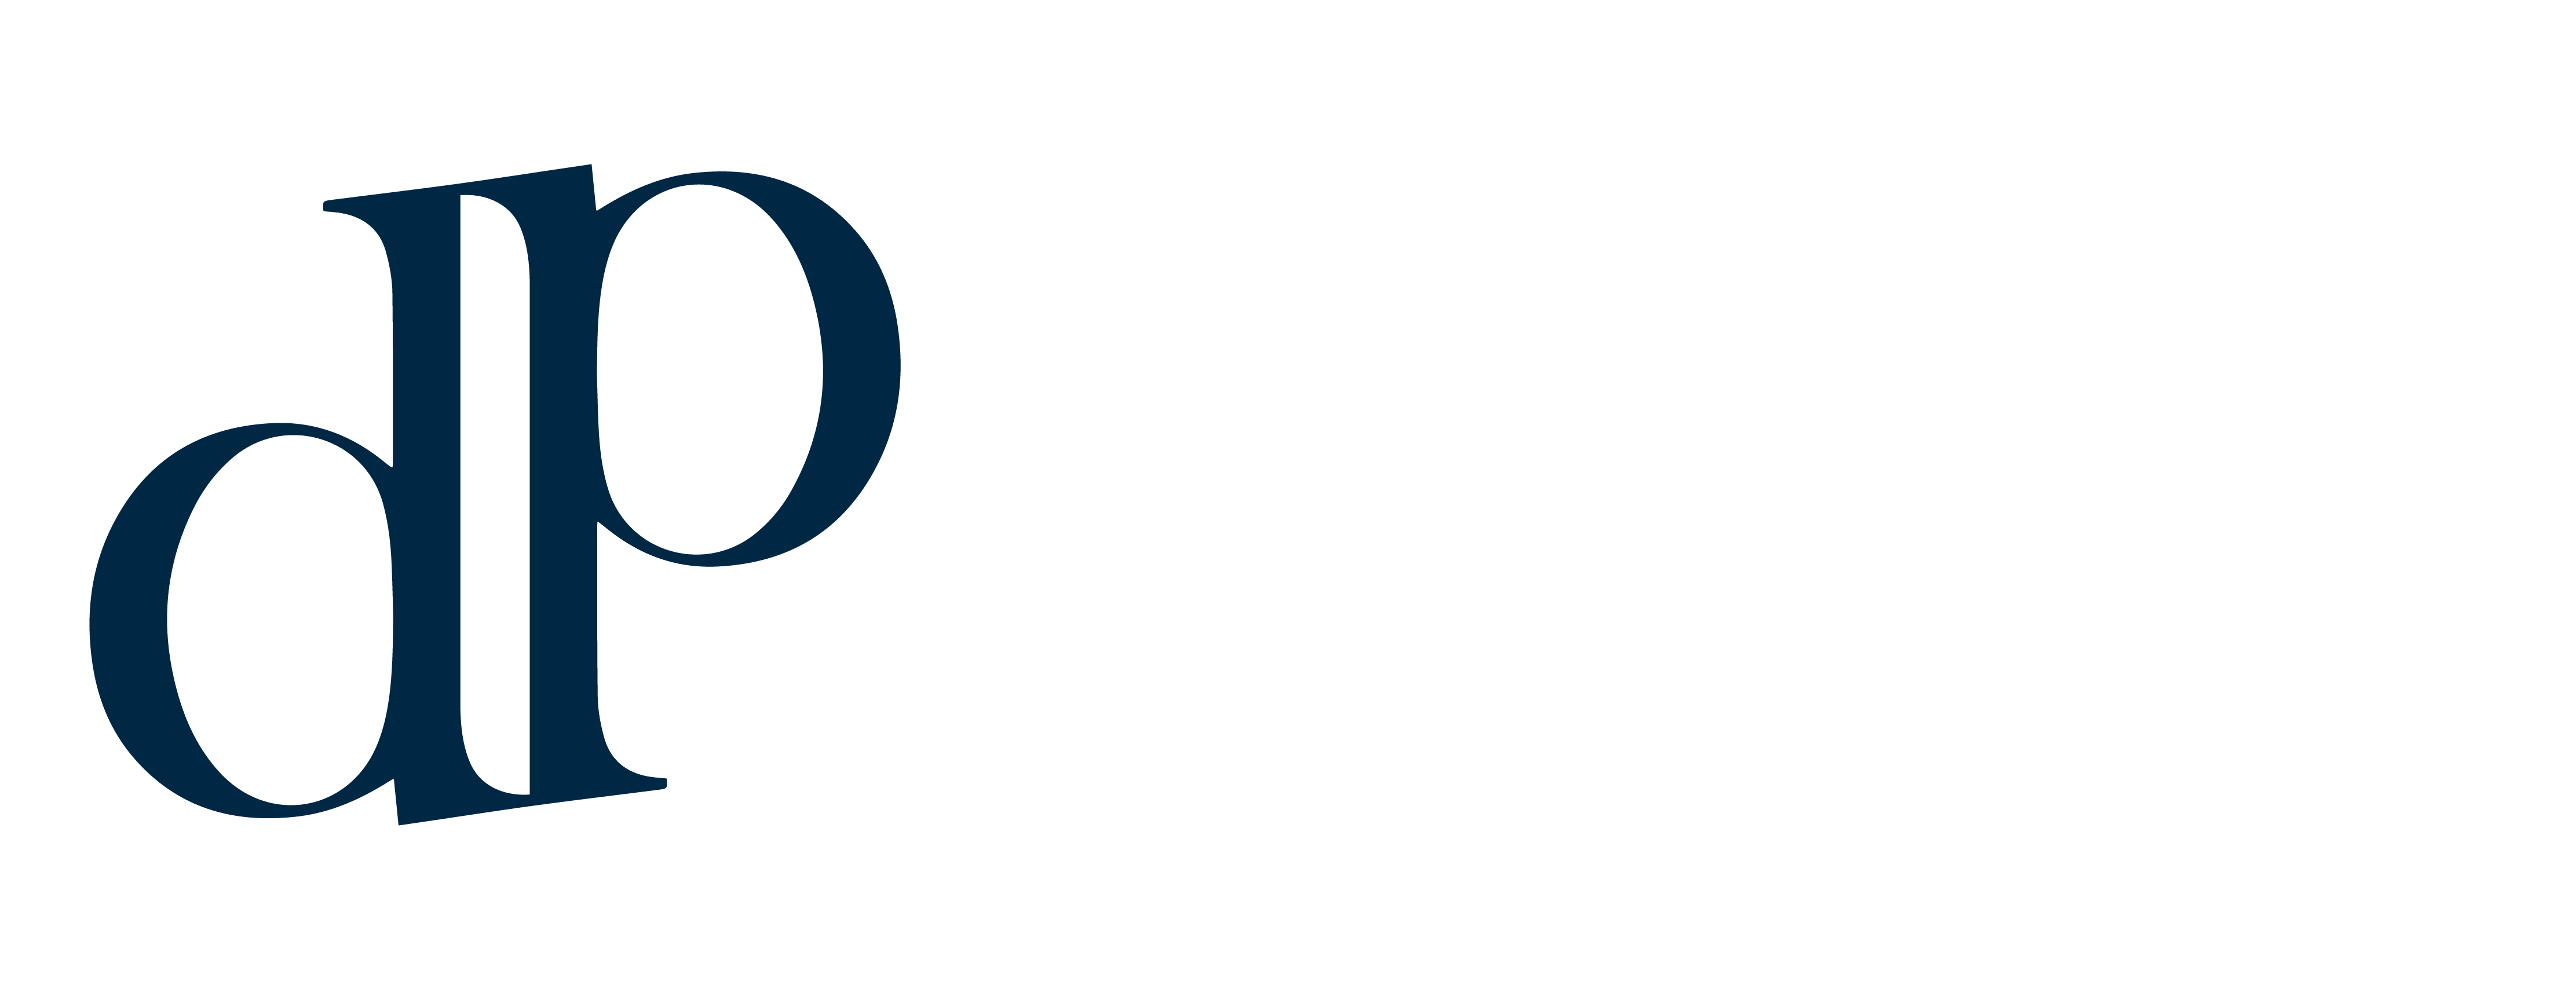 Dunitex Promocionais